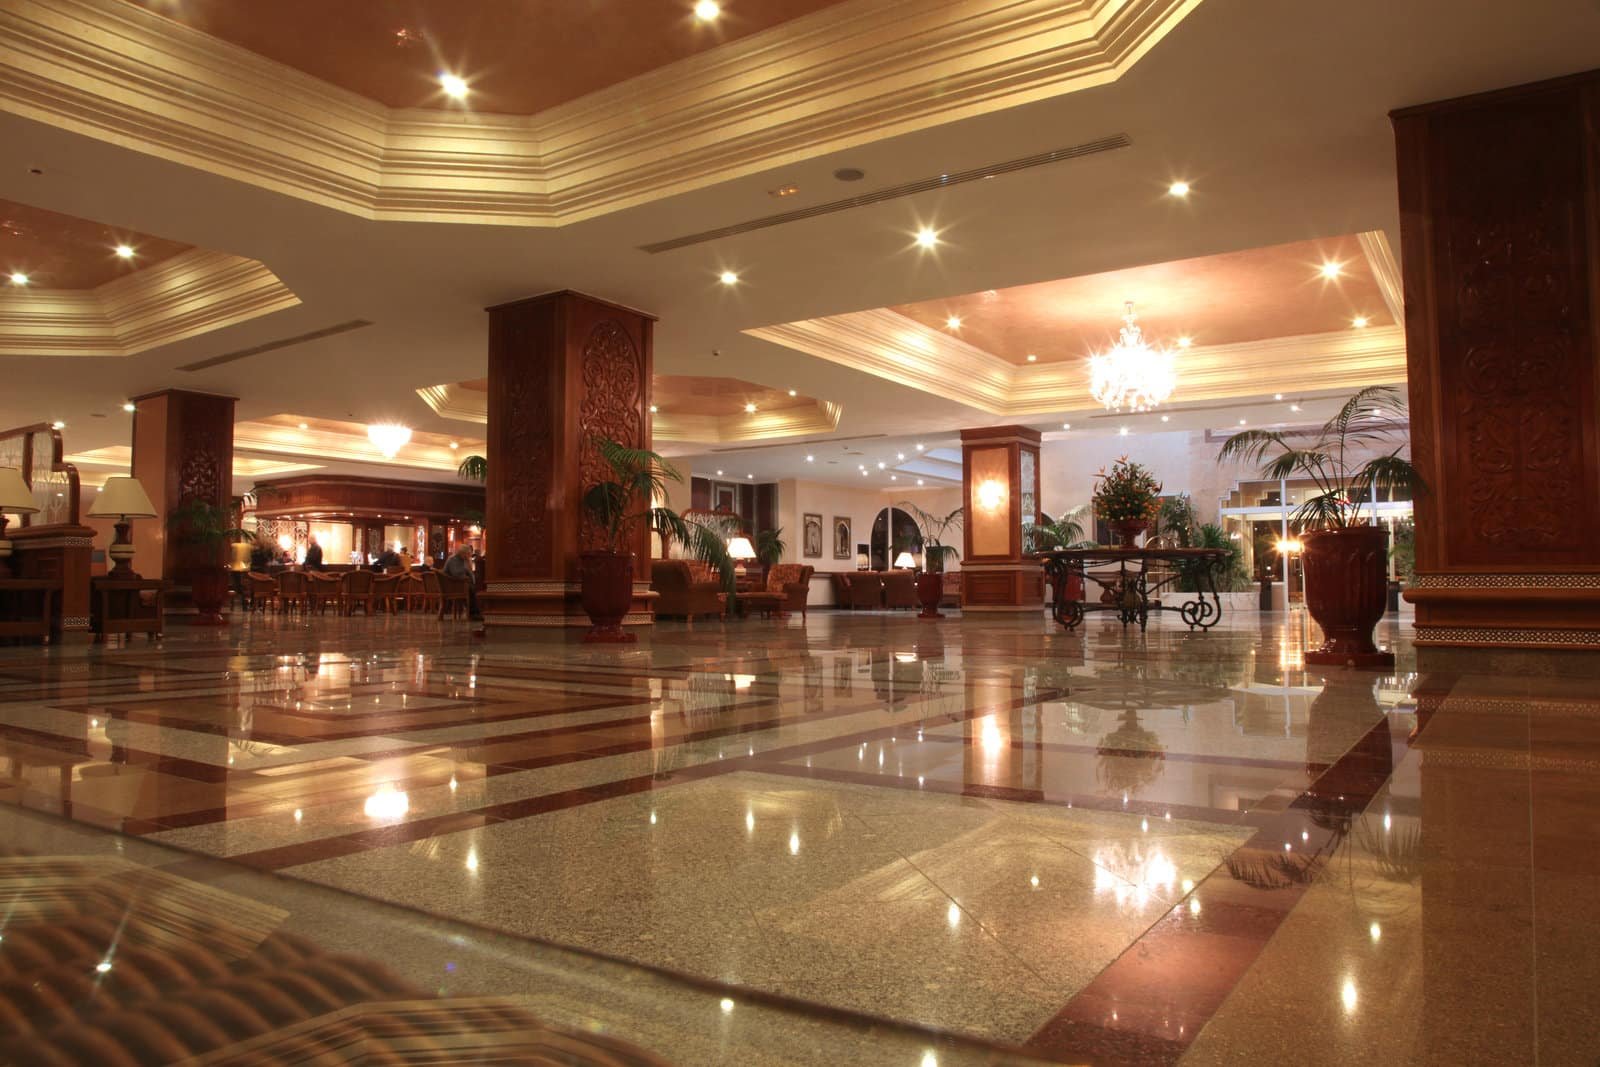 Housekeeping - hotel lobby with marble floor